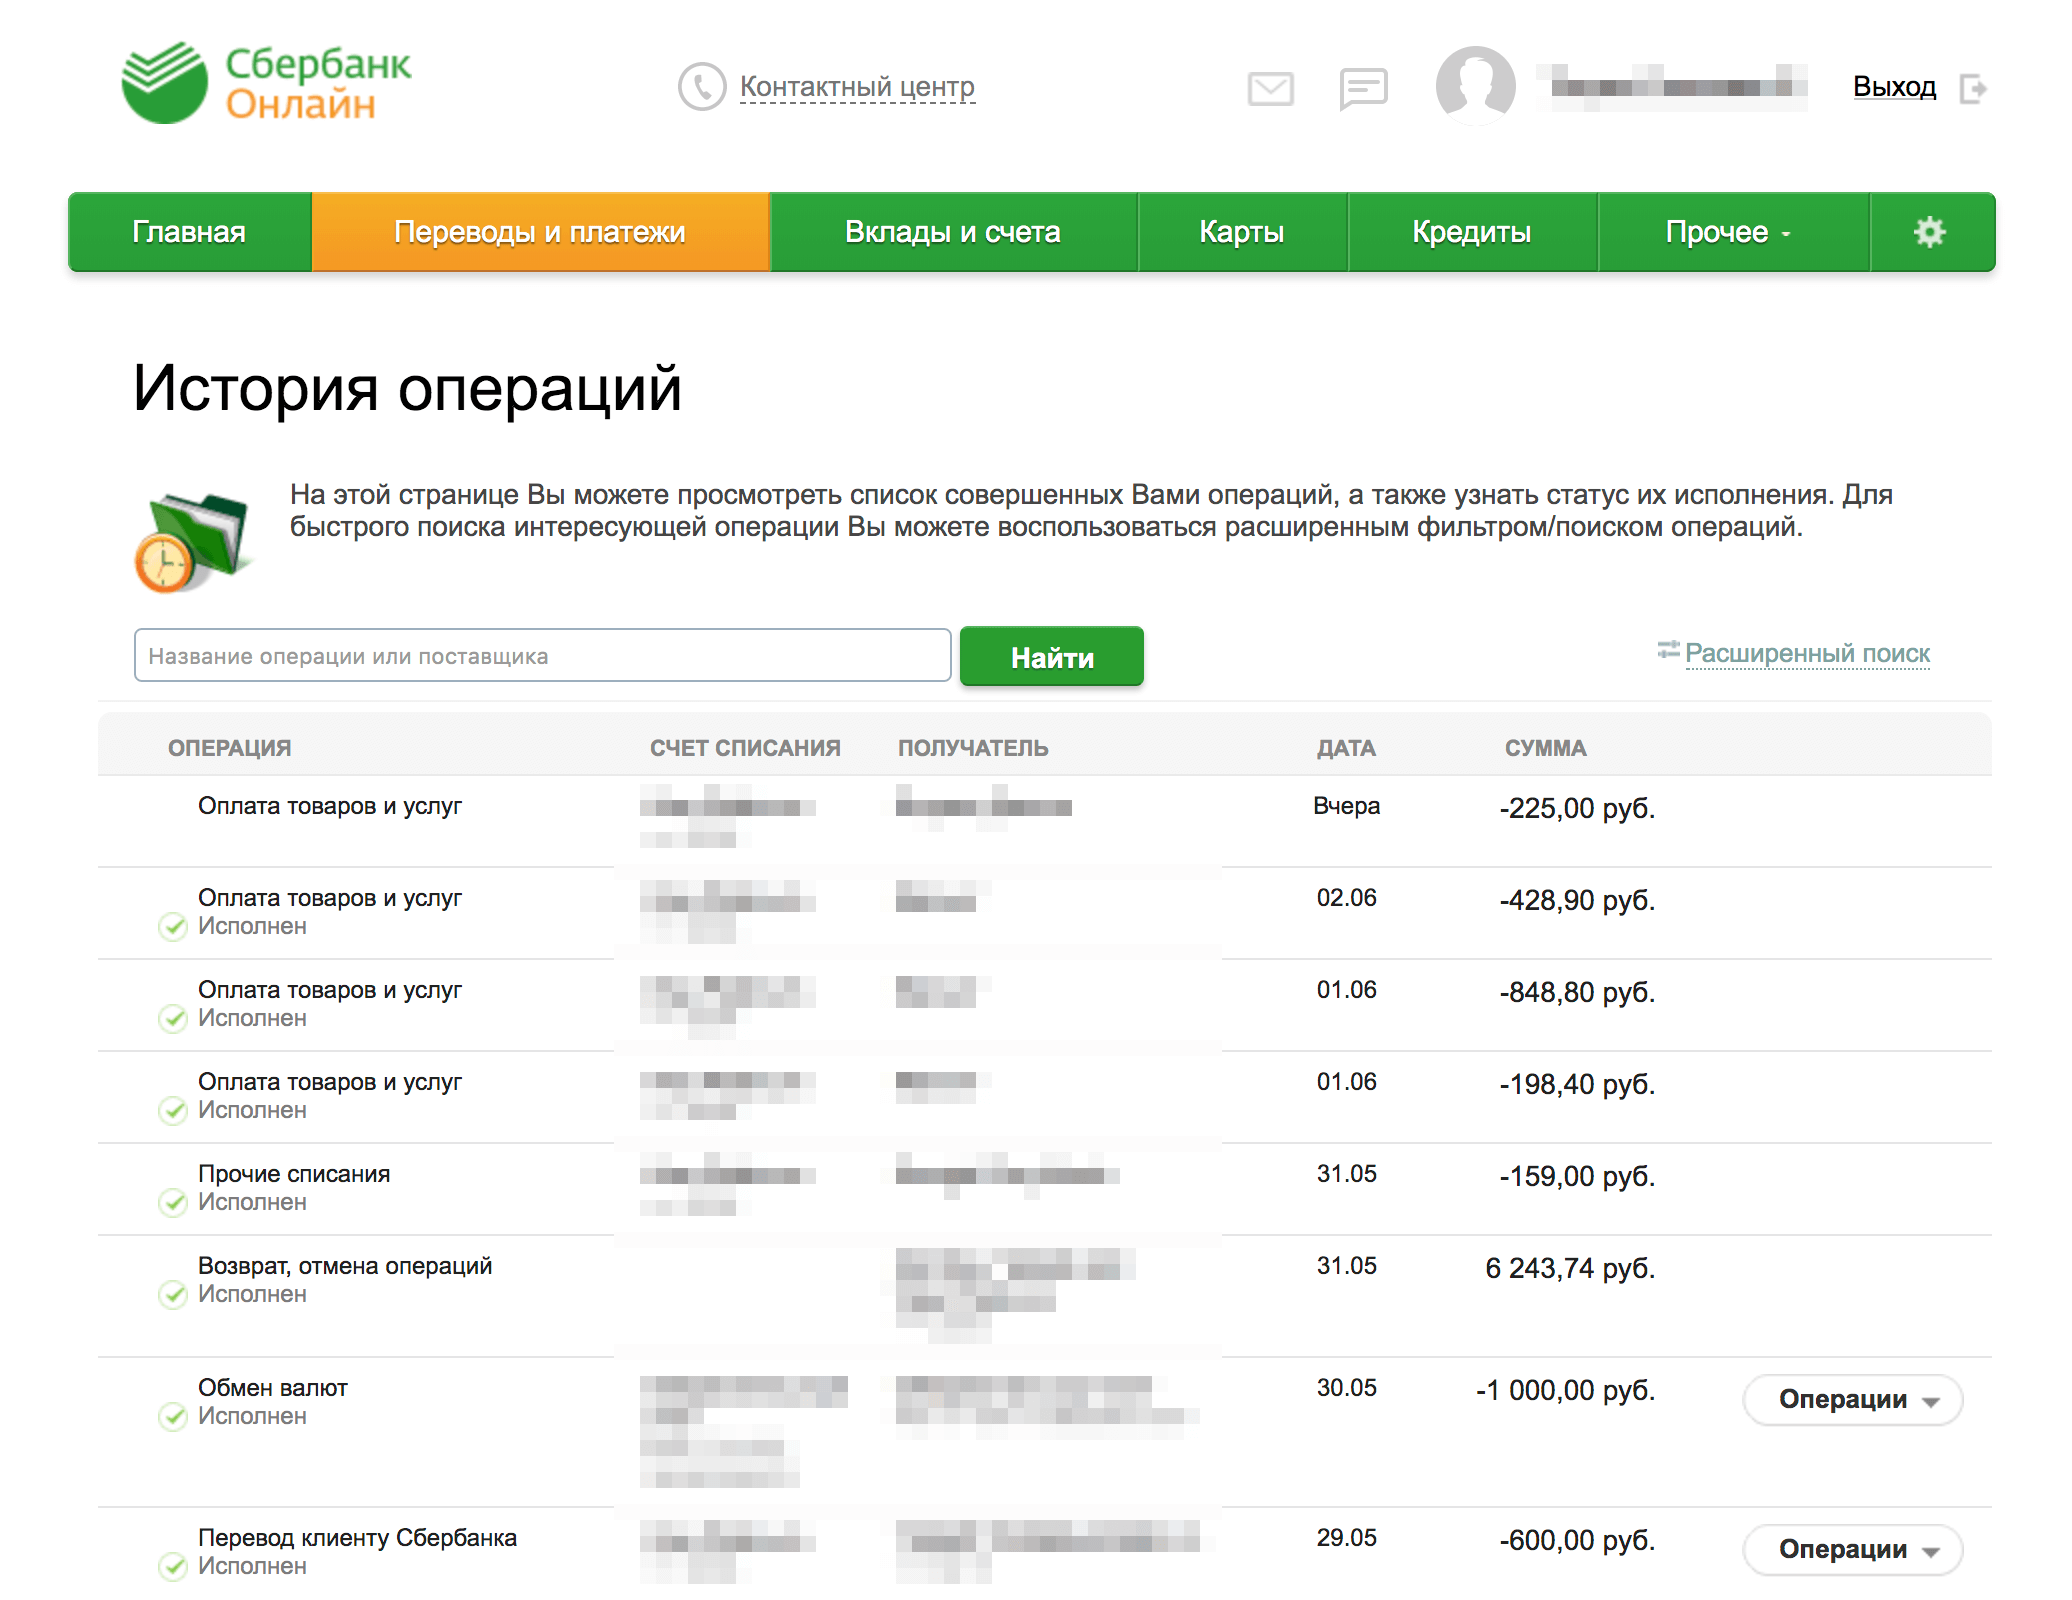 Sberbank com что это. Операции Сбербанка. История операций Сбербанк.